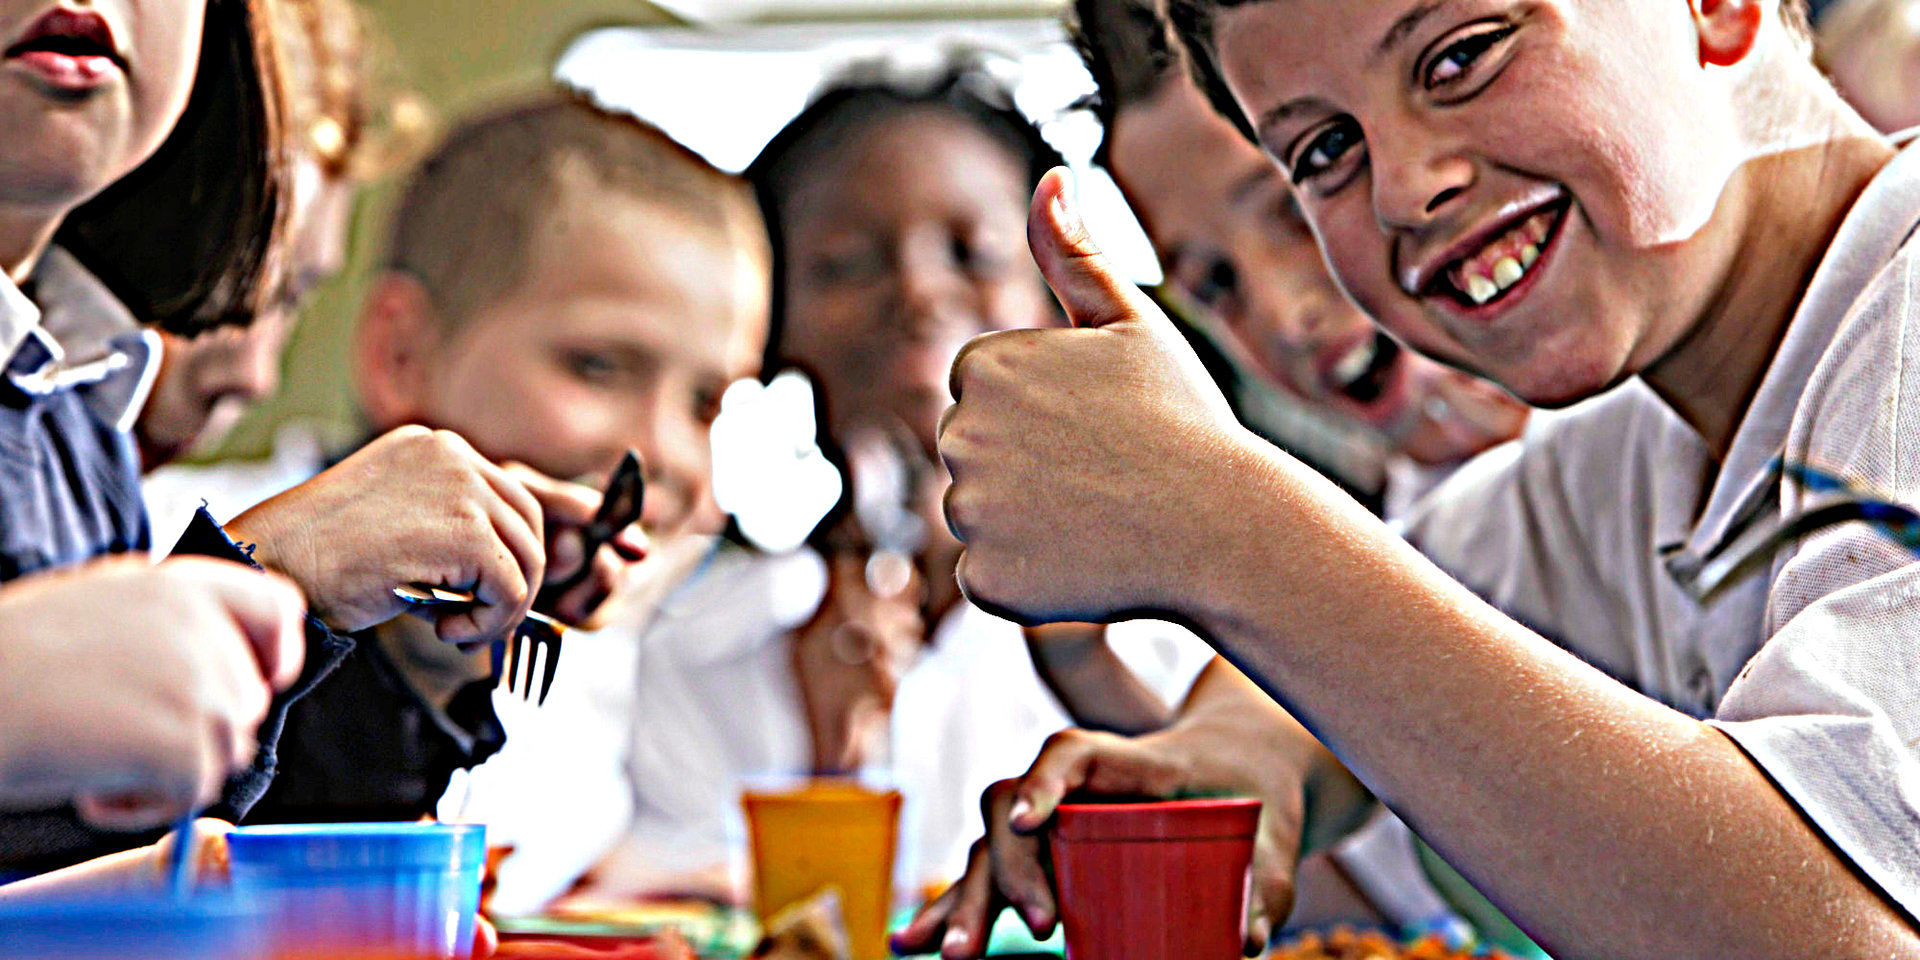 Μεσημεριανό στα ελληνικά σχολεία; Γελάει ο κόσμος… (photos)